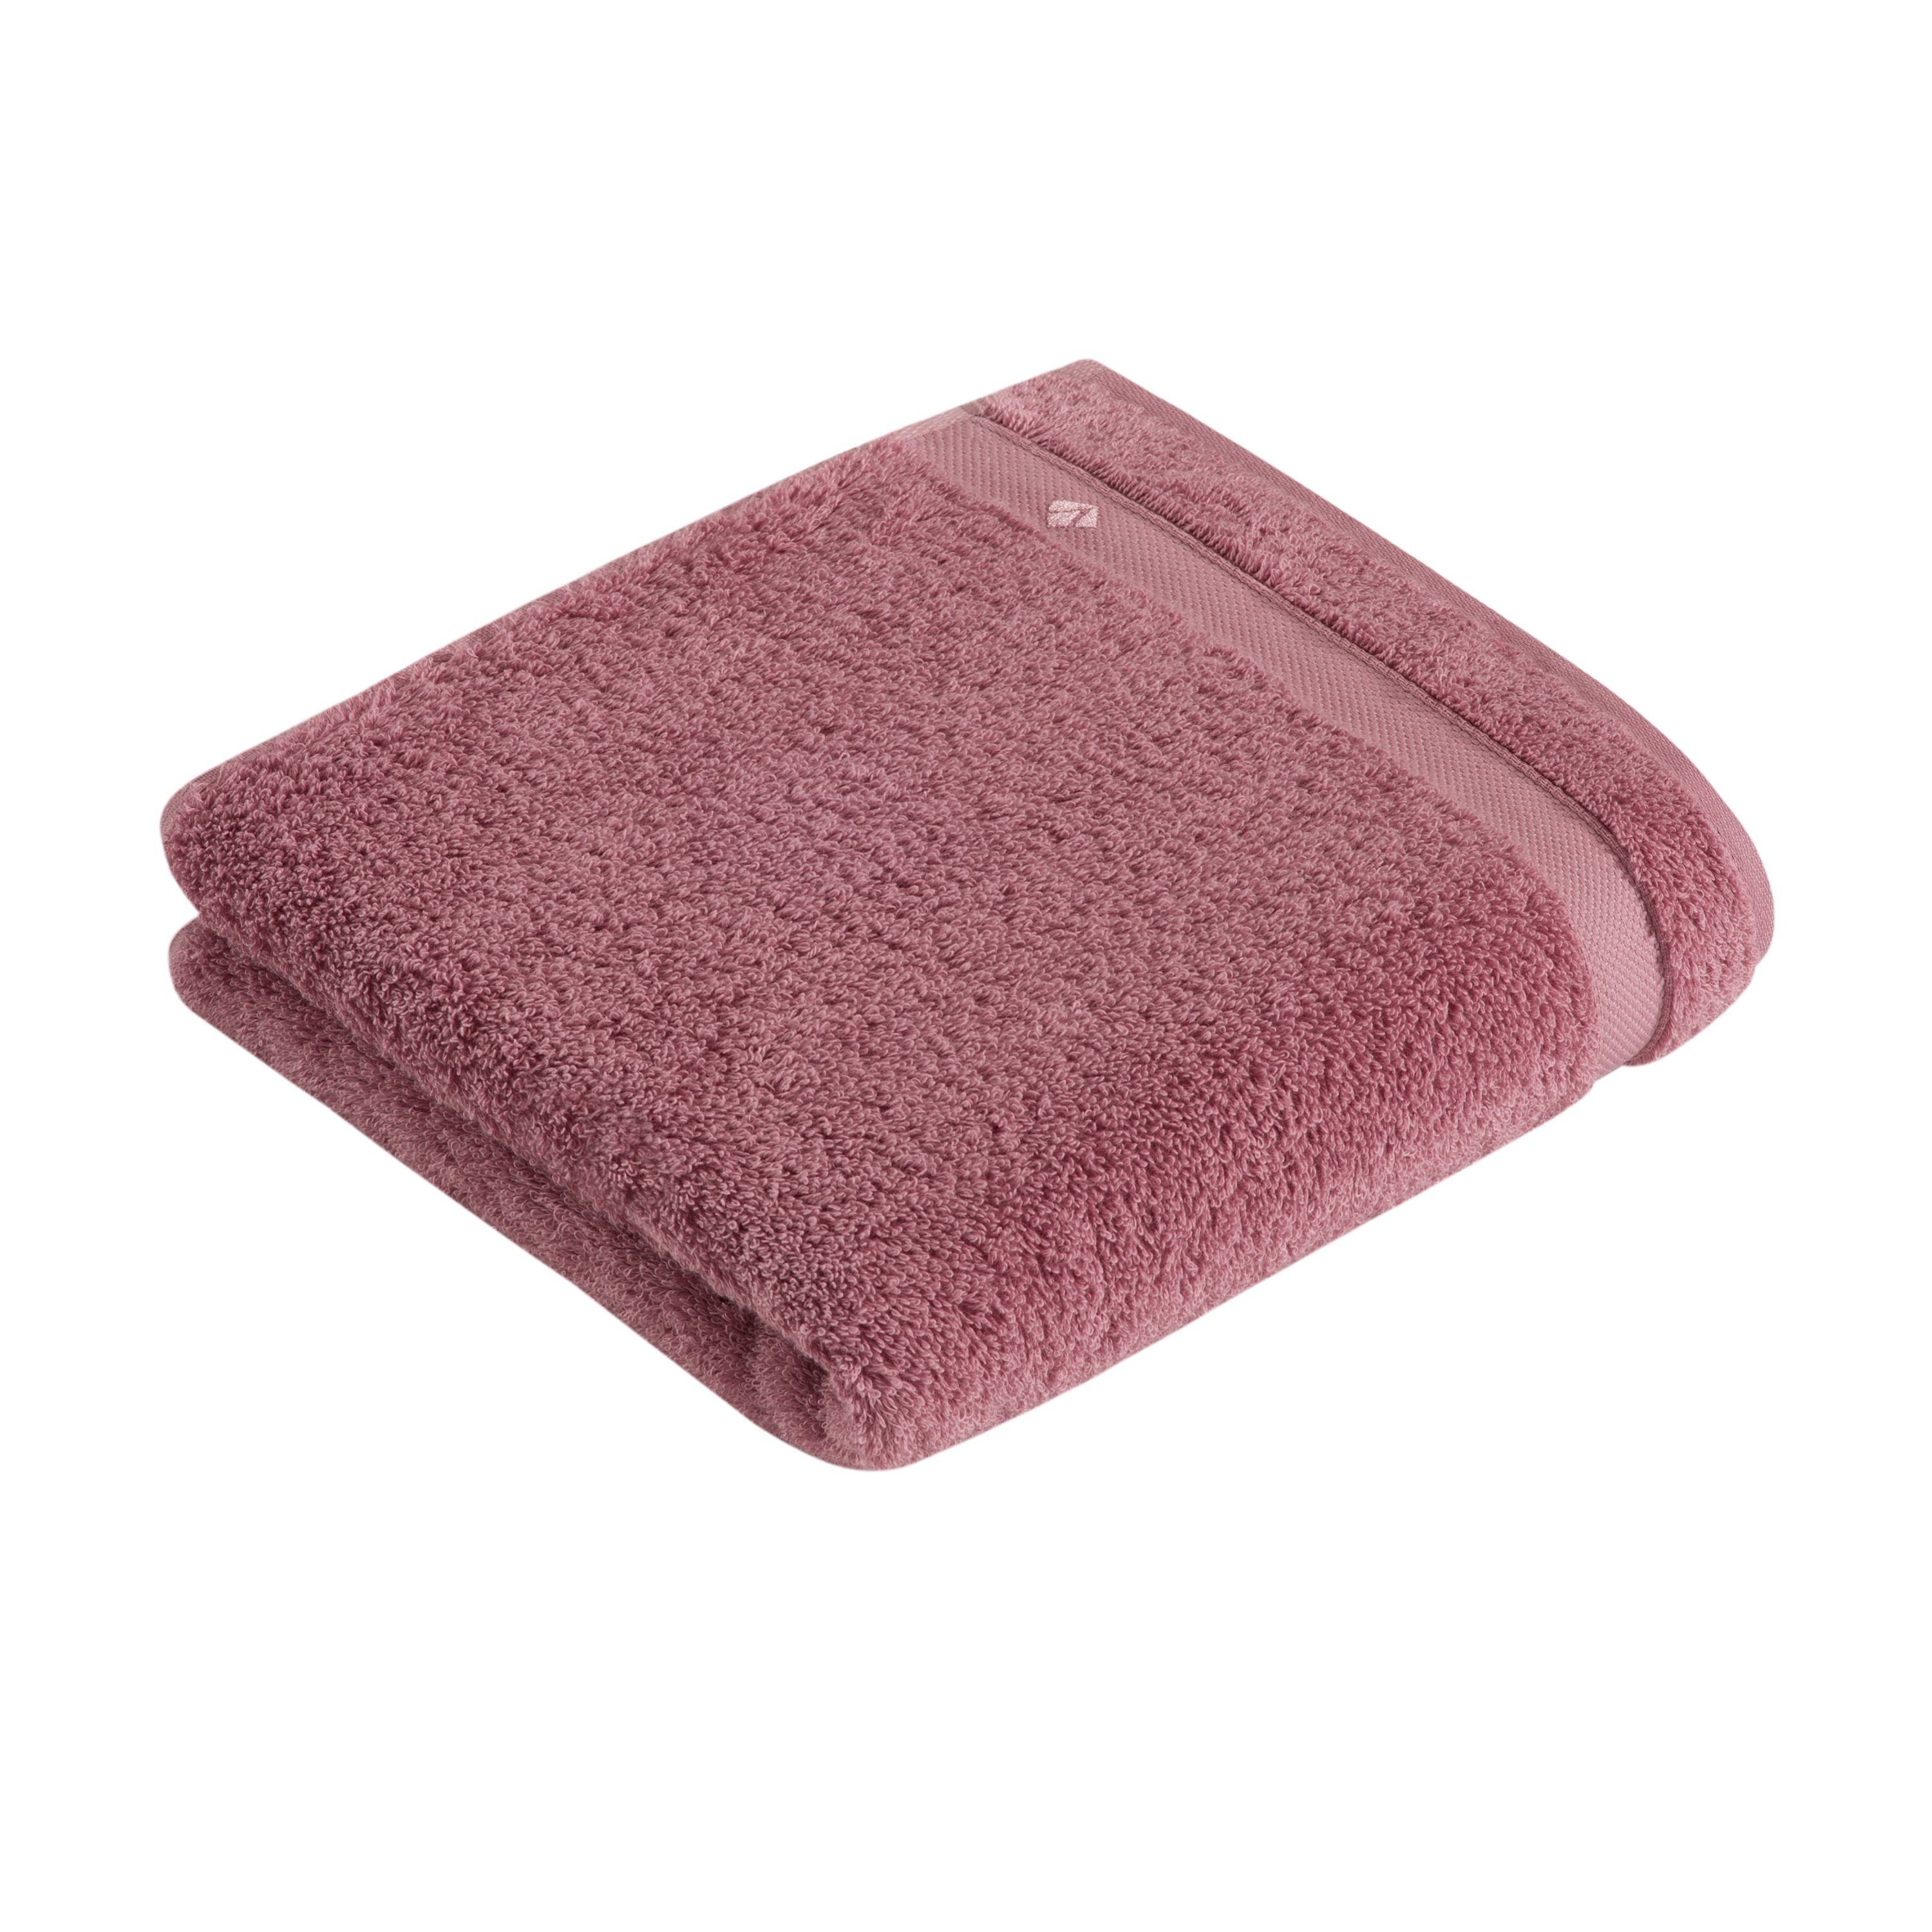 Baumwolle Vossen Handtuch, 100% Material: Baumwolle,